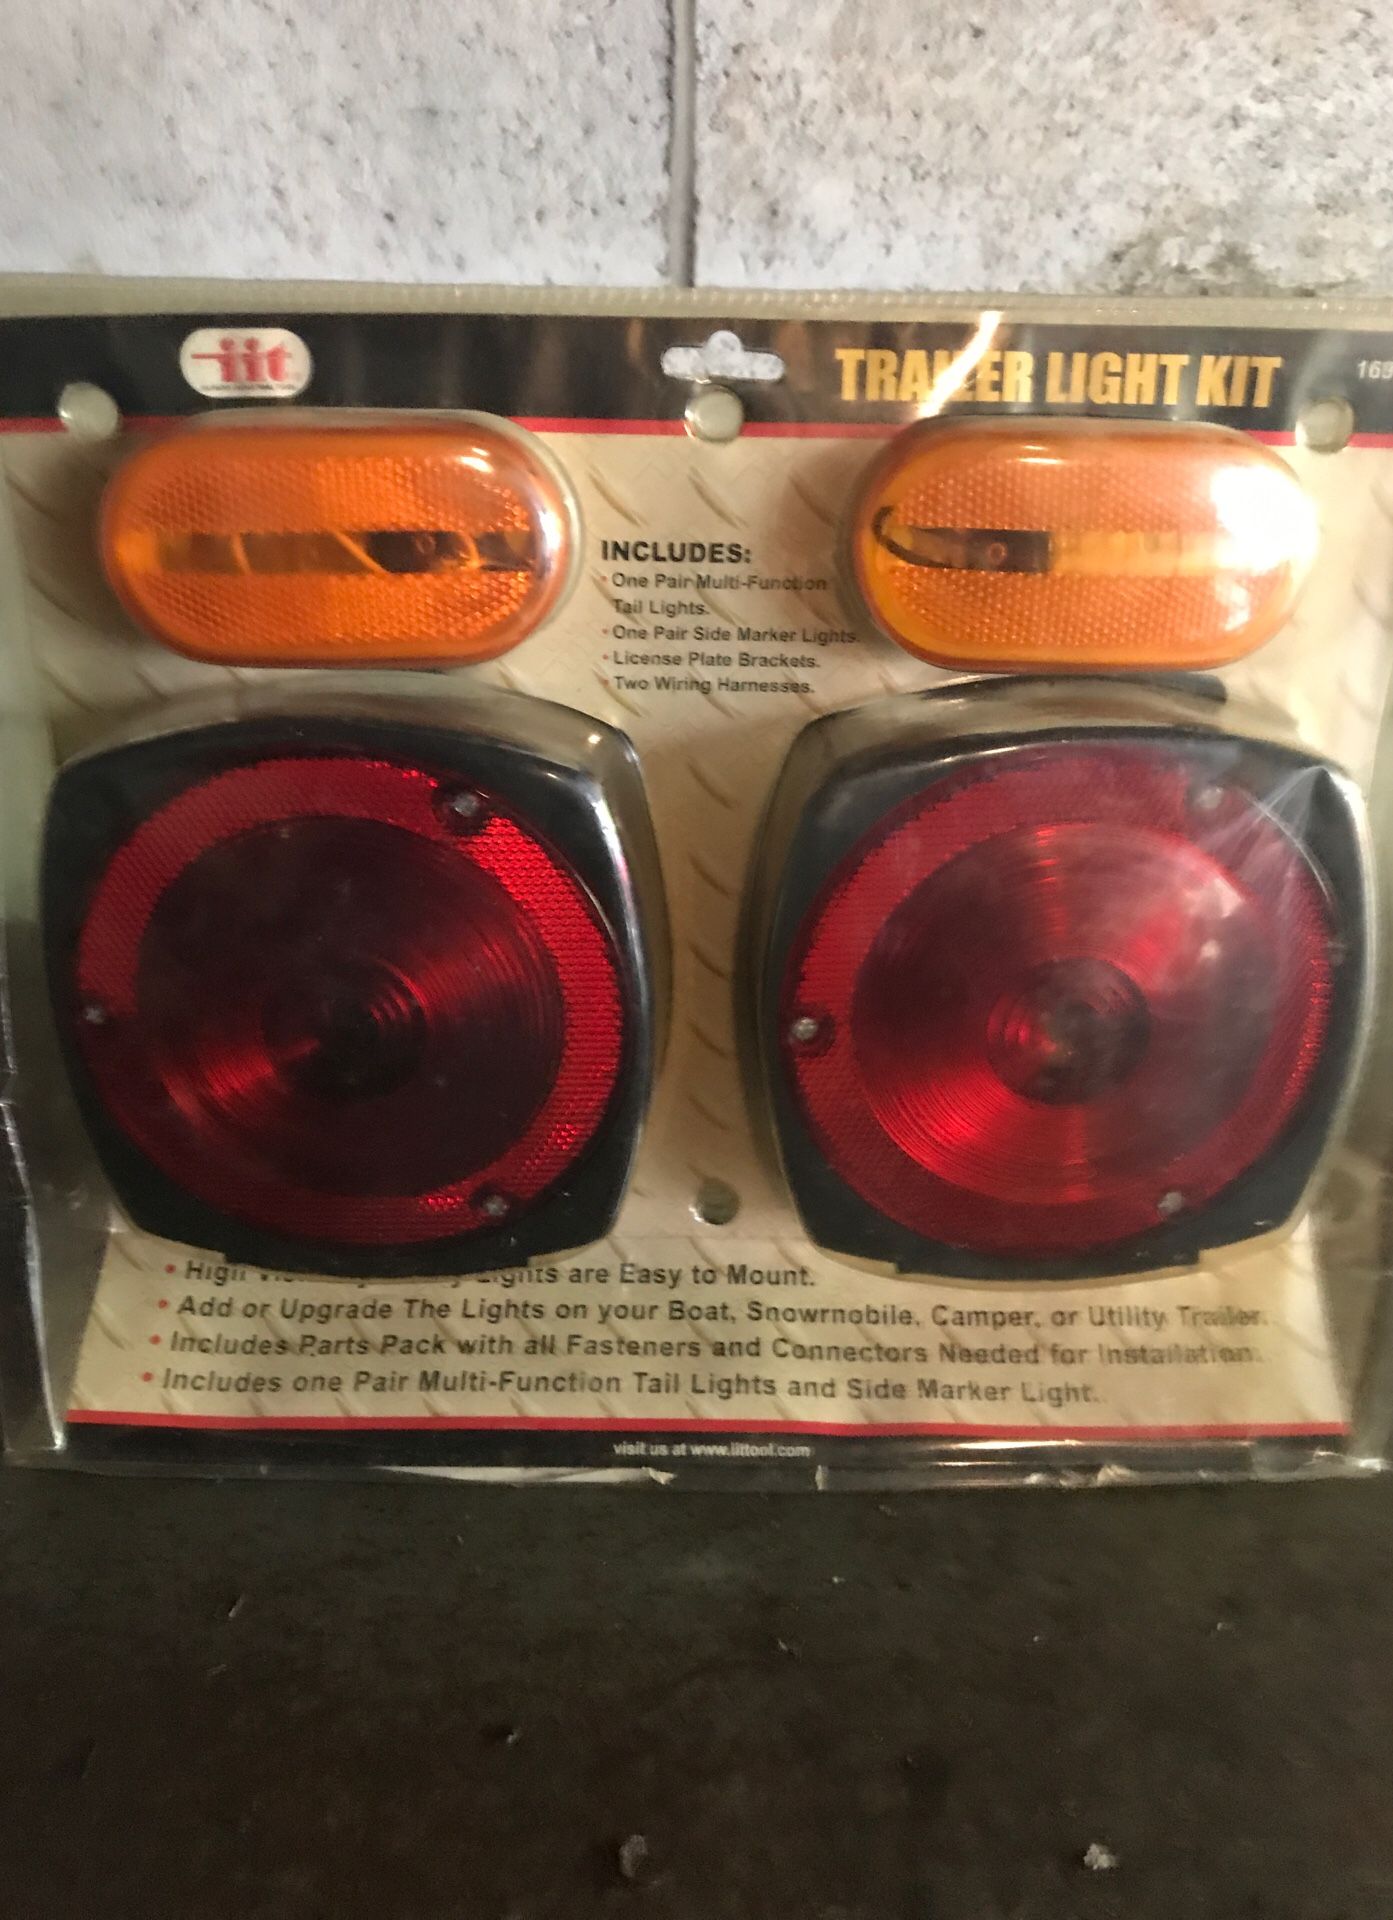 Trailer light kit